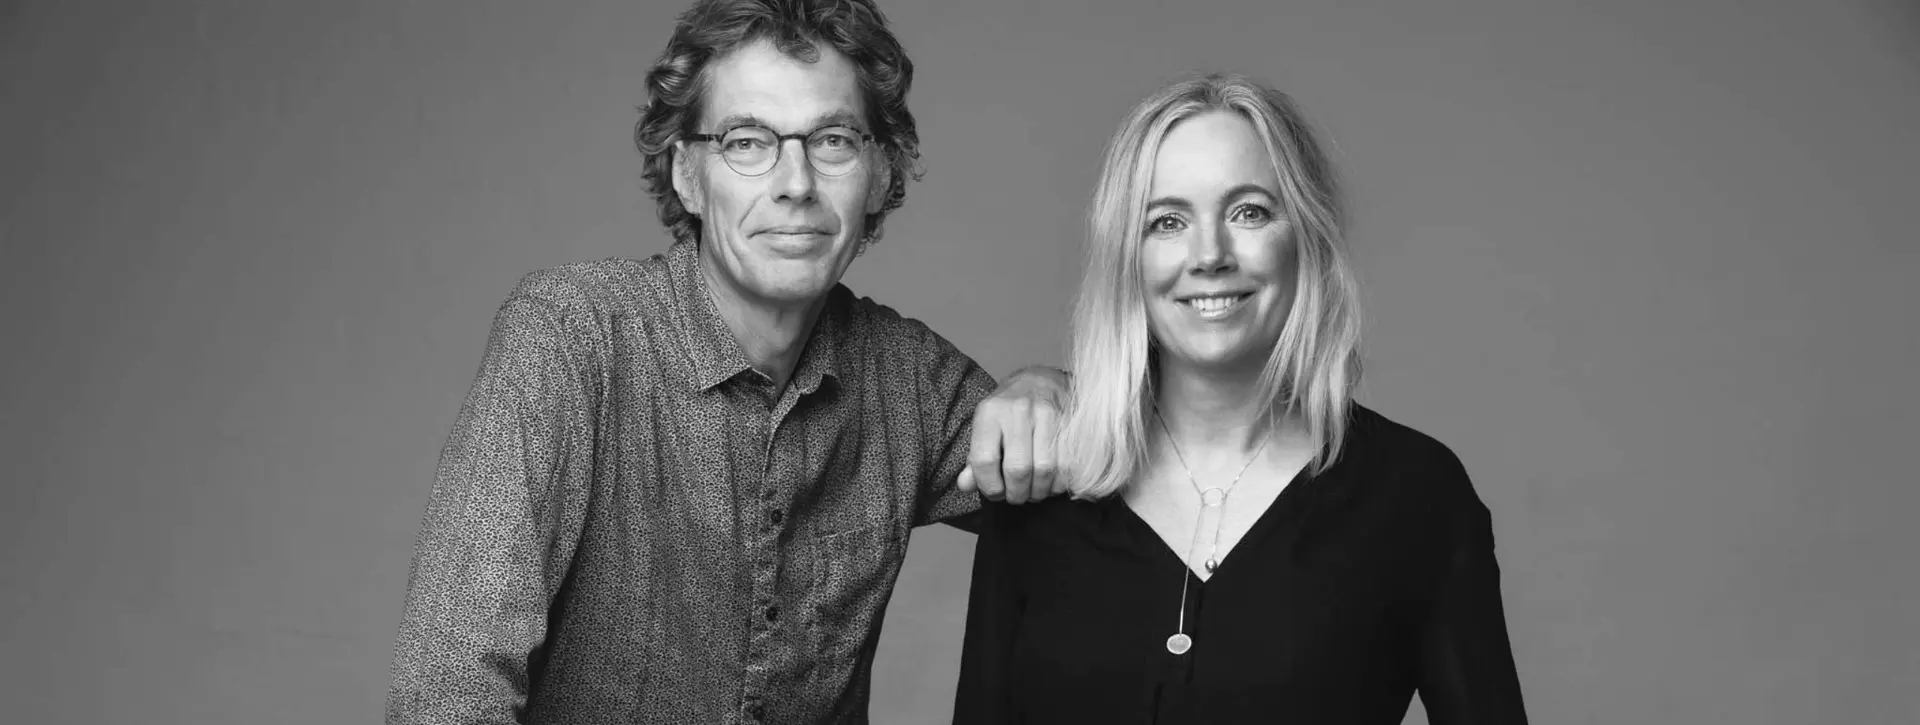 NArbutas International - designers Christina Strand and Niels Hvass